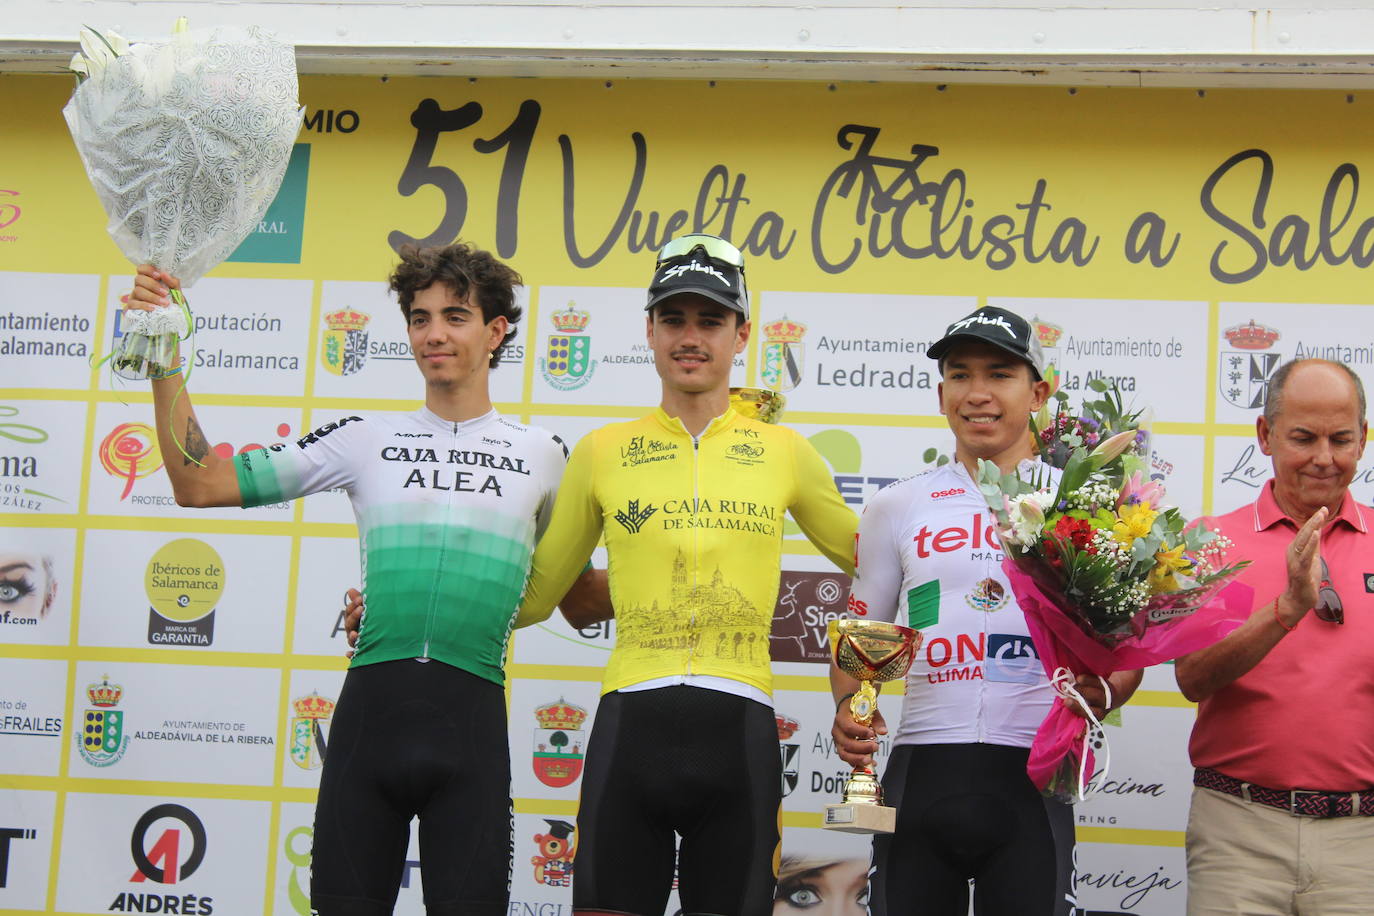 Primera etapa de la 51ª Vuelta Ciclista a Salamanca